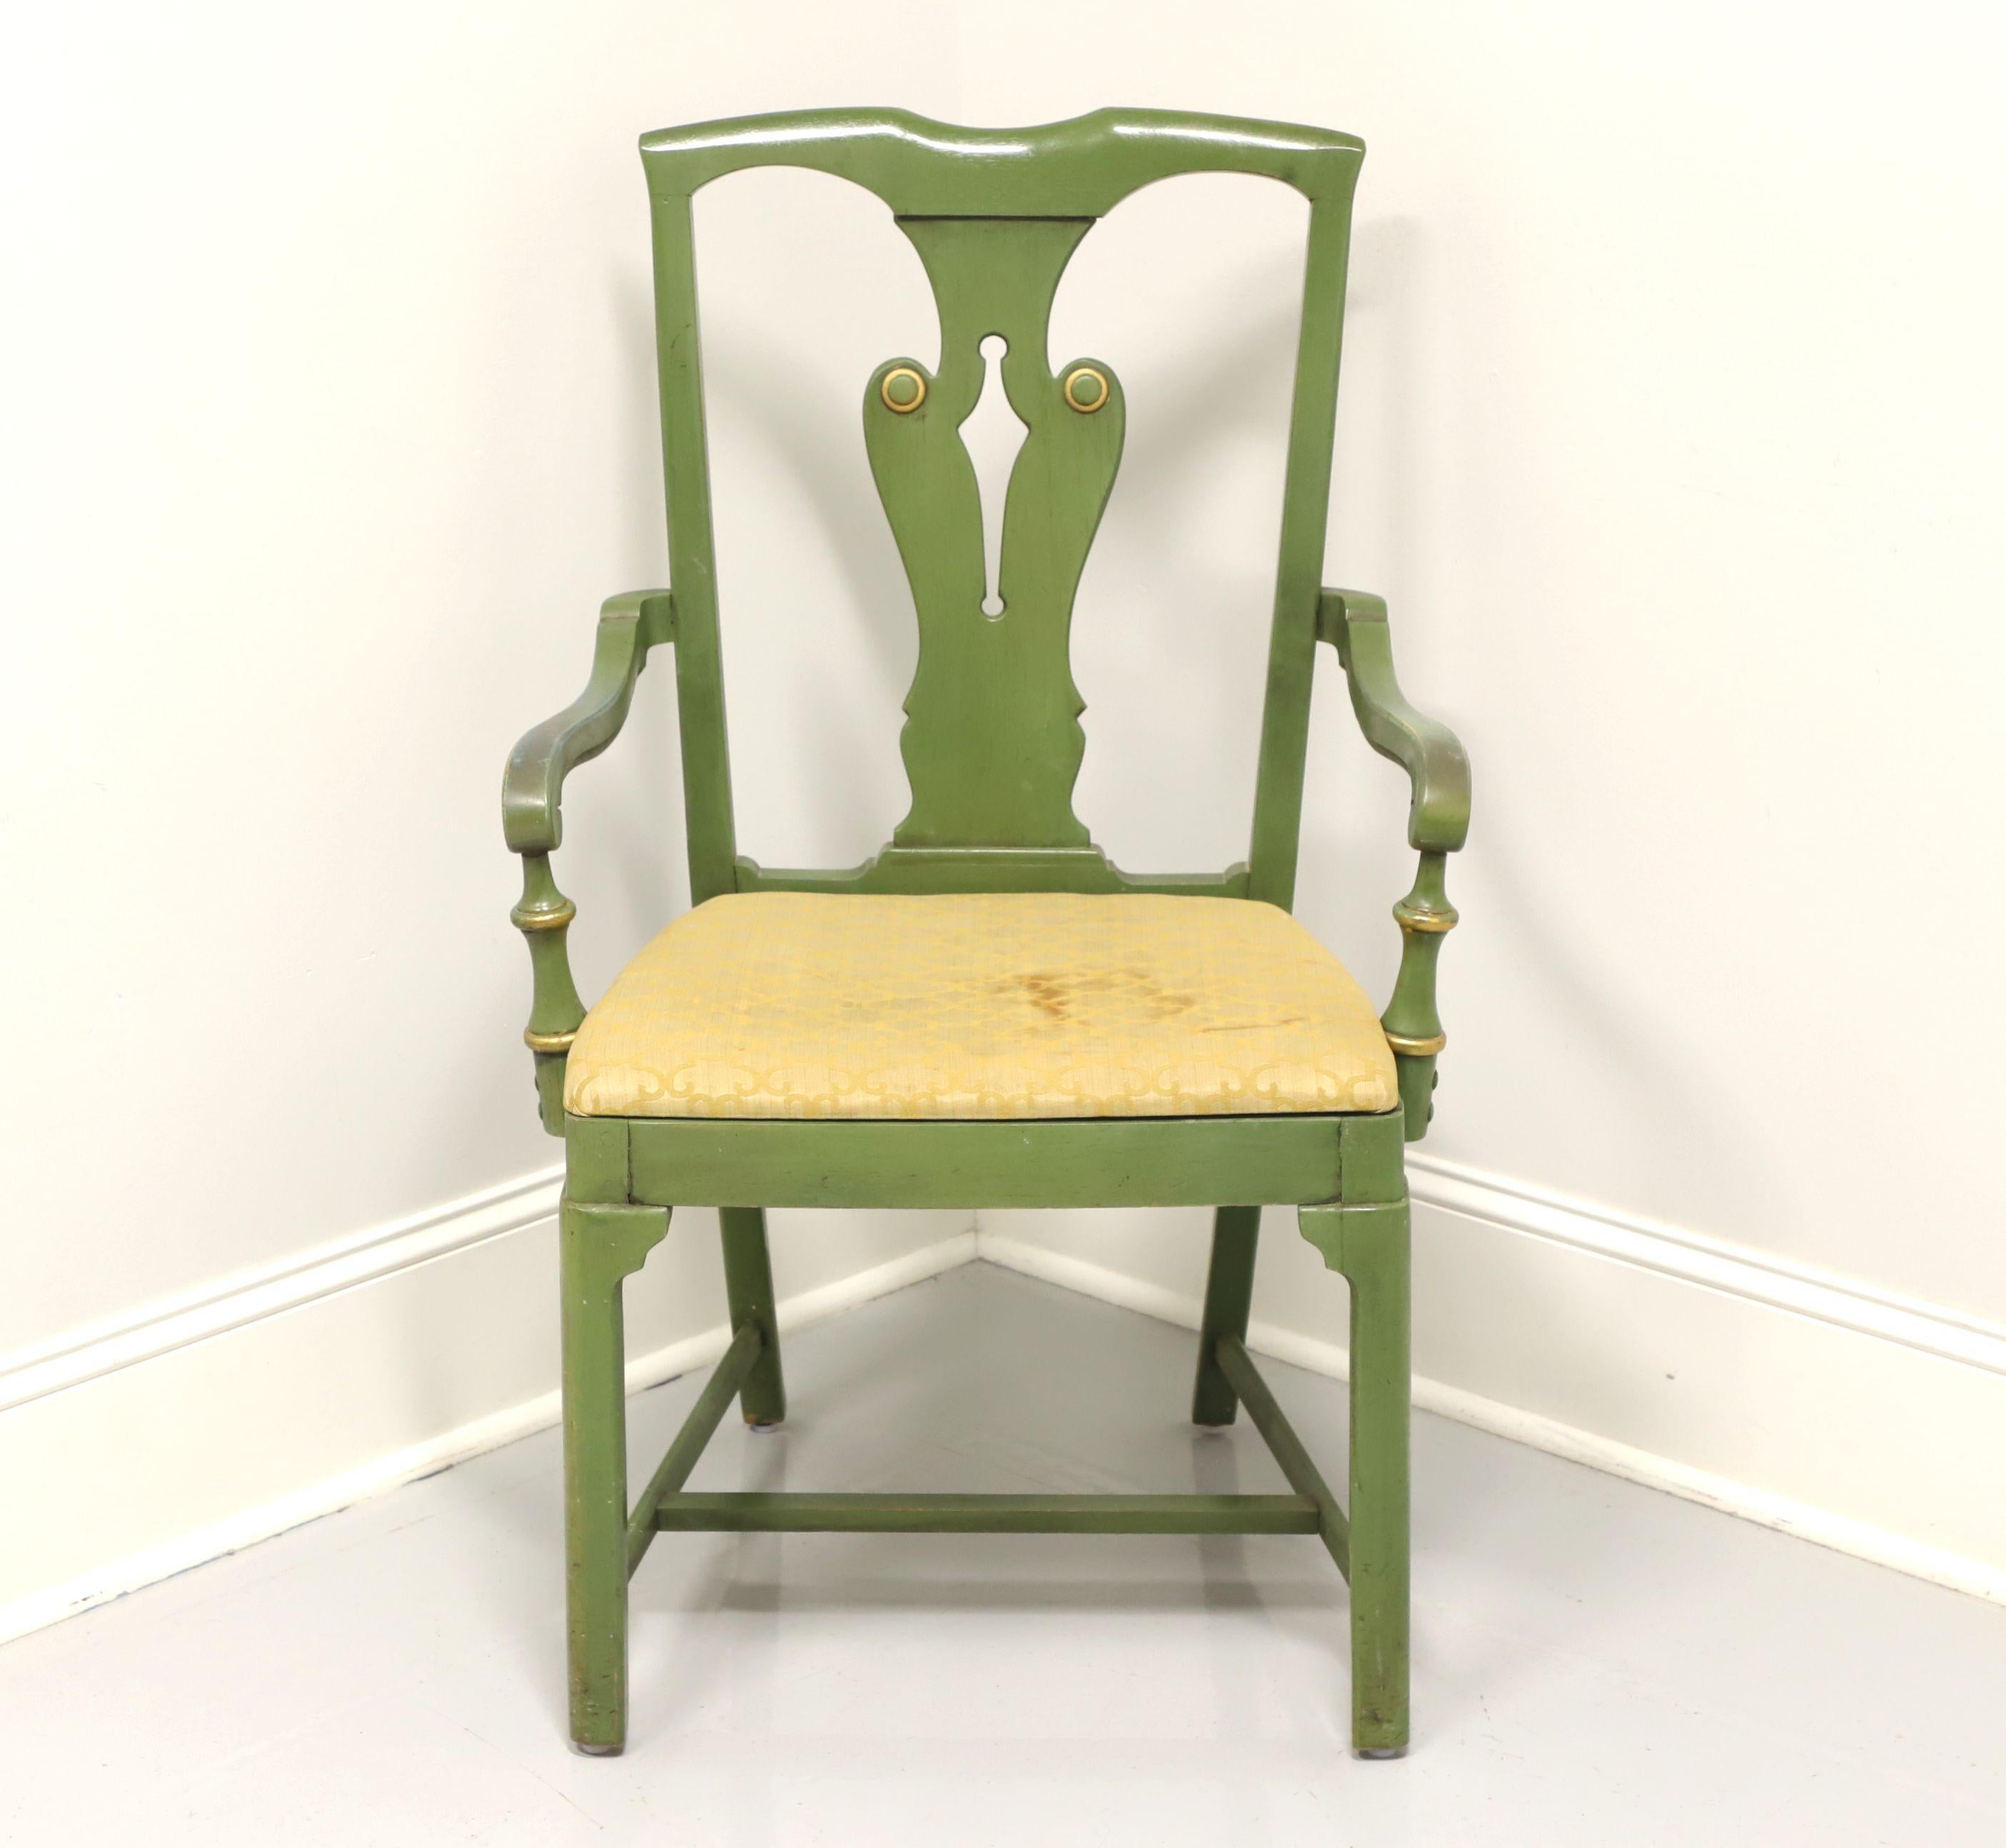 Ein Sessel im Landhausstil, ohne Markenzeichen. Grün lackiertes Hartholz mit goldenen Akzenten, geschnitzte Kammleiste und Rückenlehne, geschwungene Arme, stoffgepolsterter Sitz, gerade Beine und Strecker. Wahrscheinlich in den USA im späten 20.